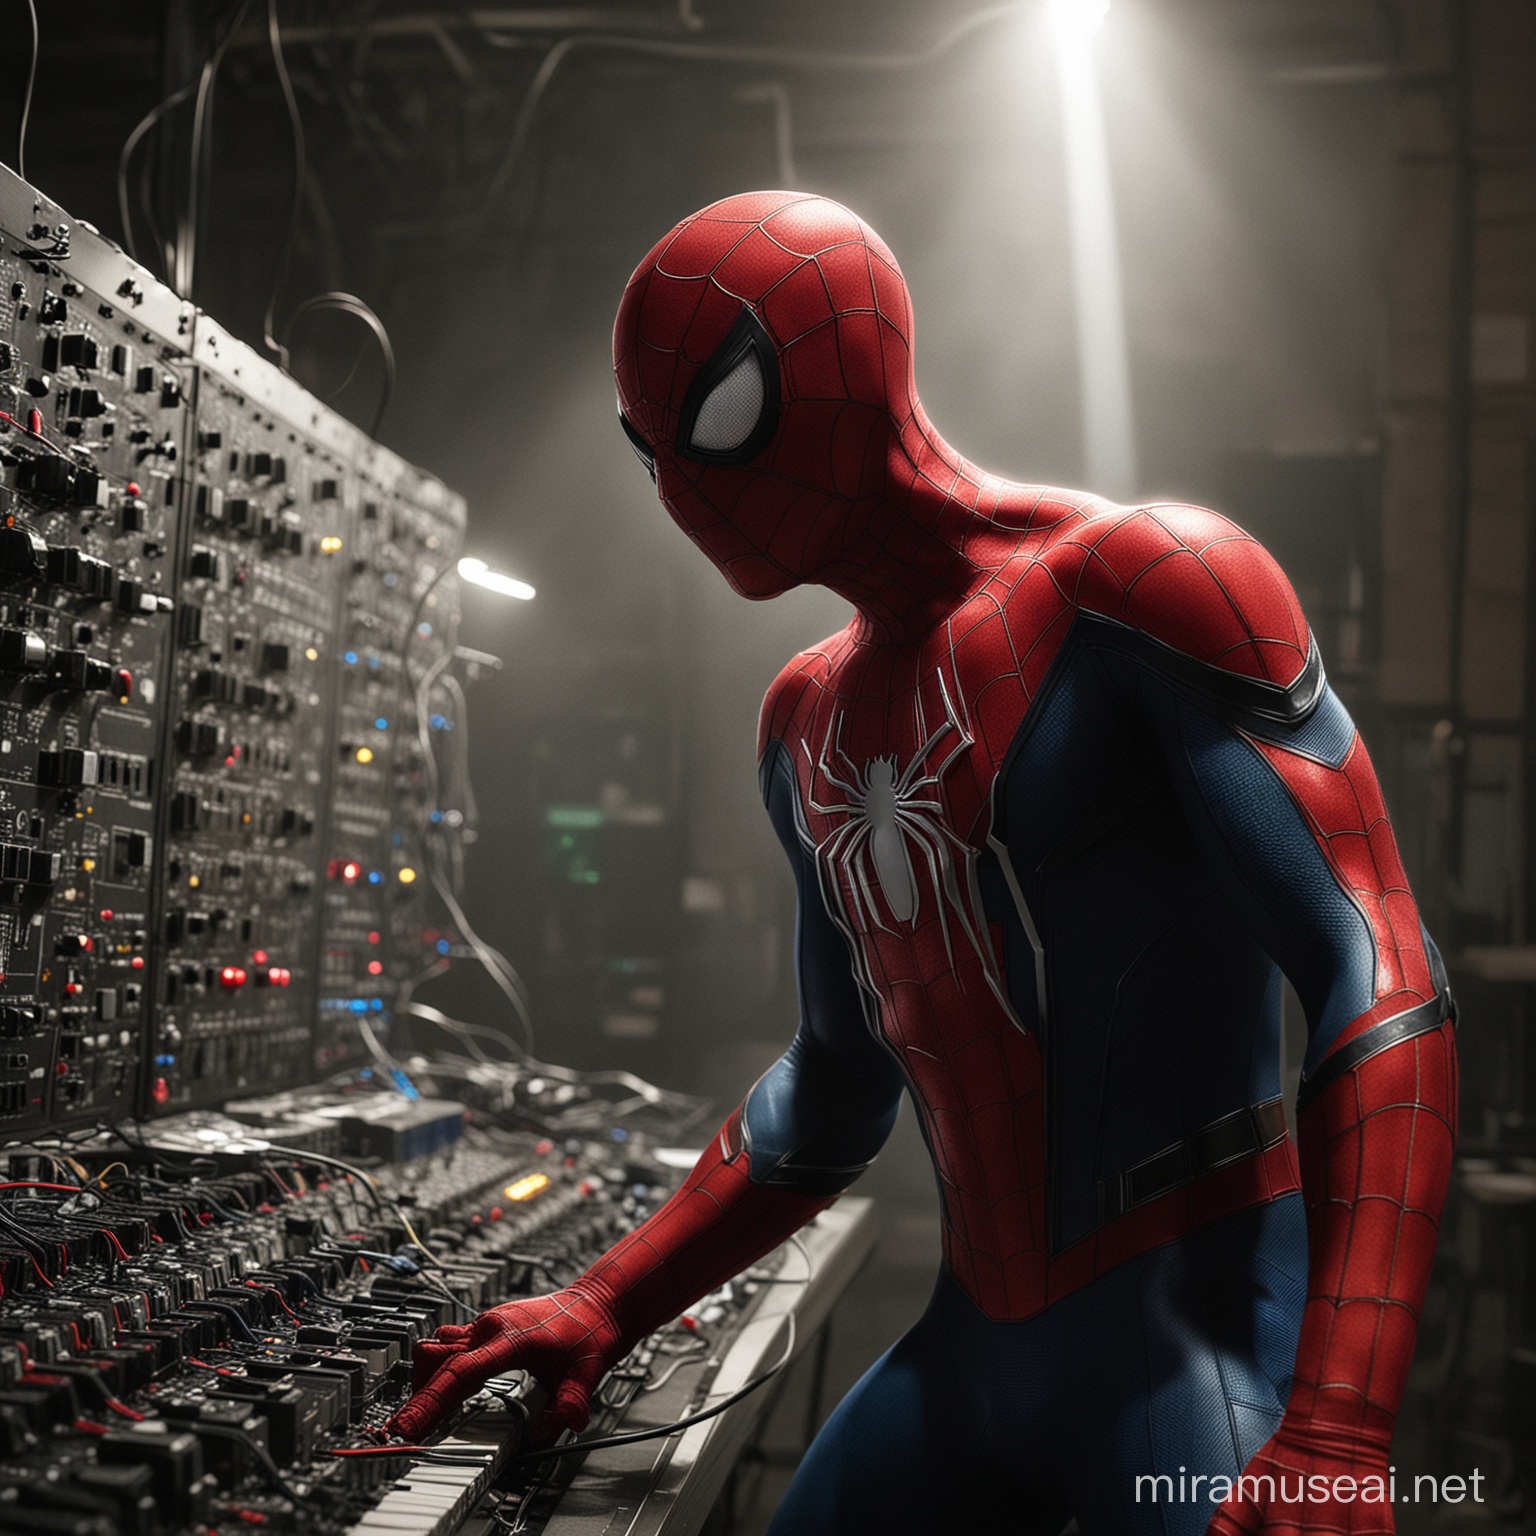 Spiderman as a lighting engineer